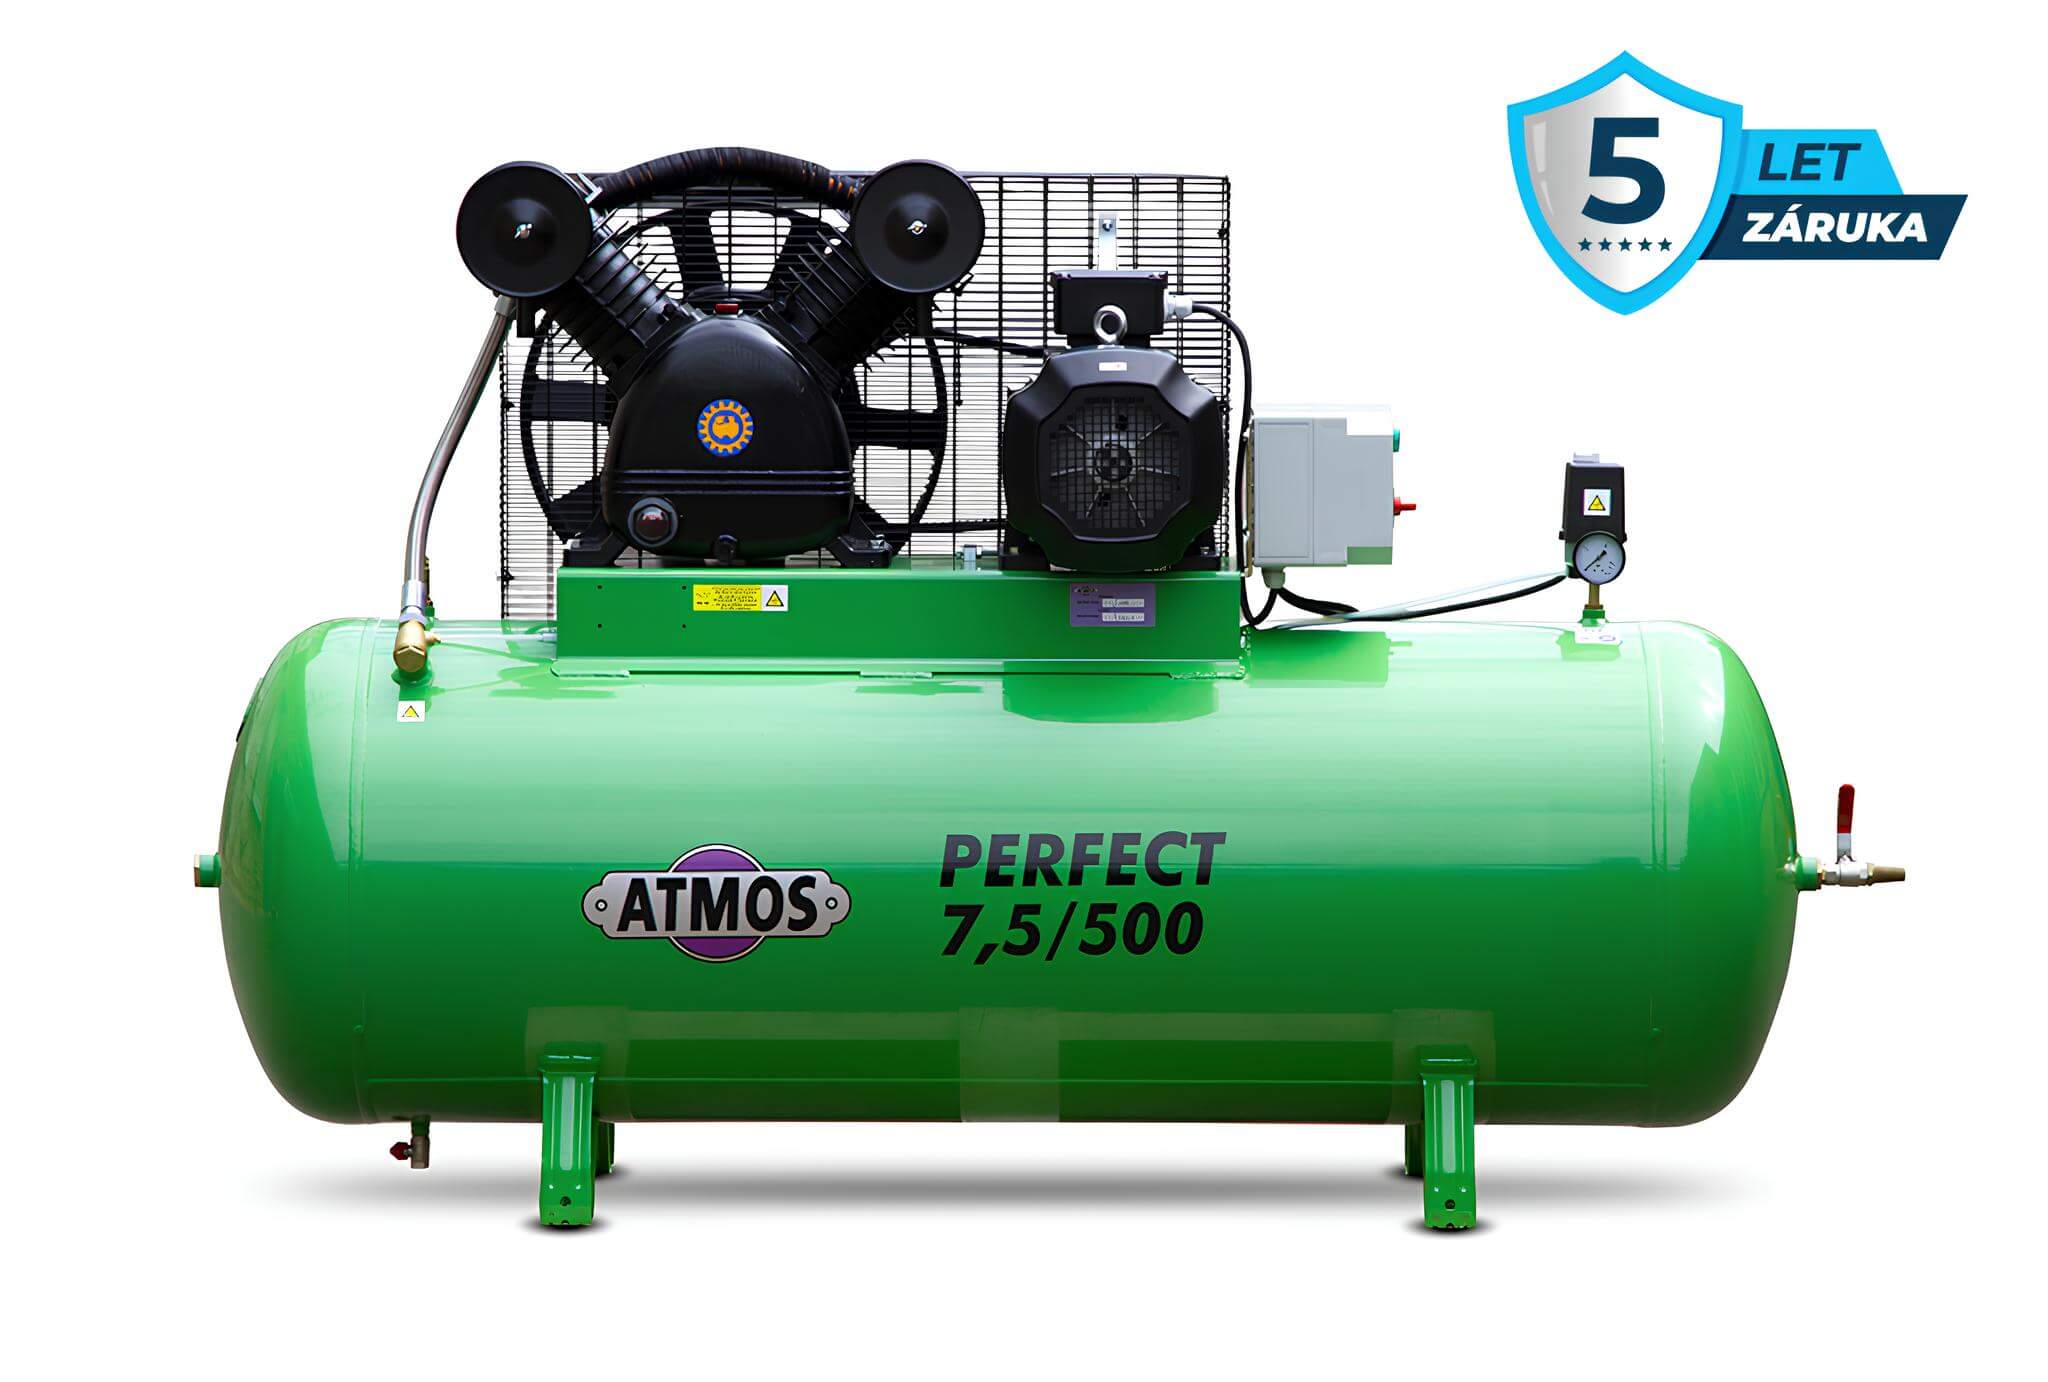 Atmos Pístový kompresor Perfect - 7,5/500 příkon 7,5 kW, výkon 920 l/min, tlak 10 bar, vzdušník 500 l, napětí 400/50 V/Hz